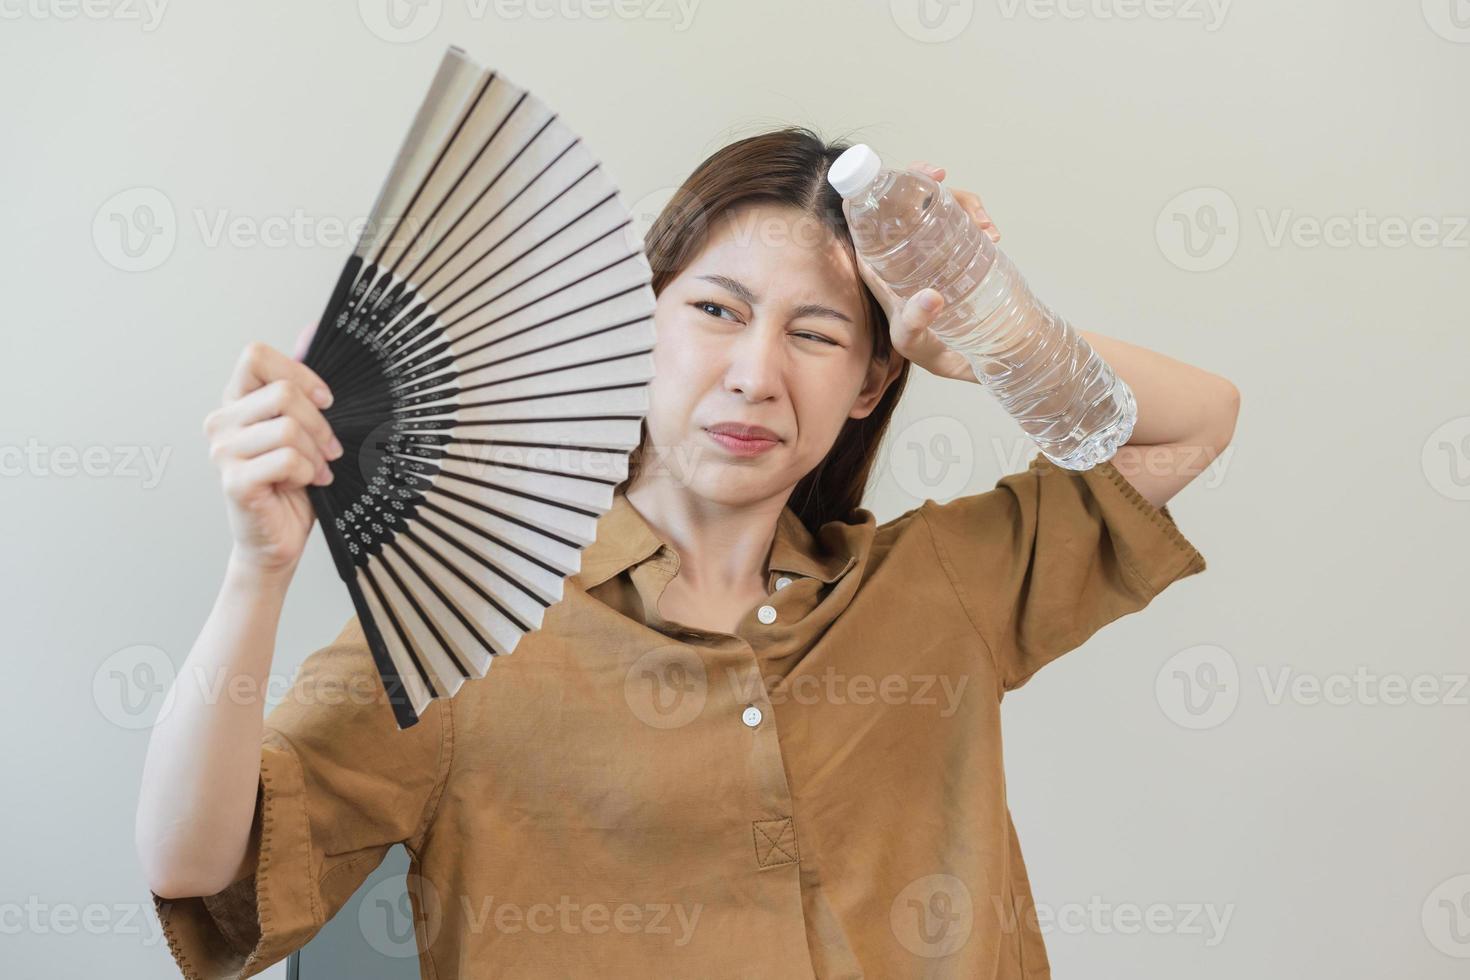 sommar värme stroke, varm väder, trött asiatisk ung kvinna svettig och törstig, uppfriskande med hand i blåser, Vinka fläkt till ventilation, innehav kall vatten flaska kran henne kropp när temperatur hög. foto